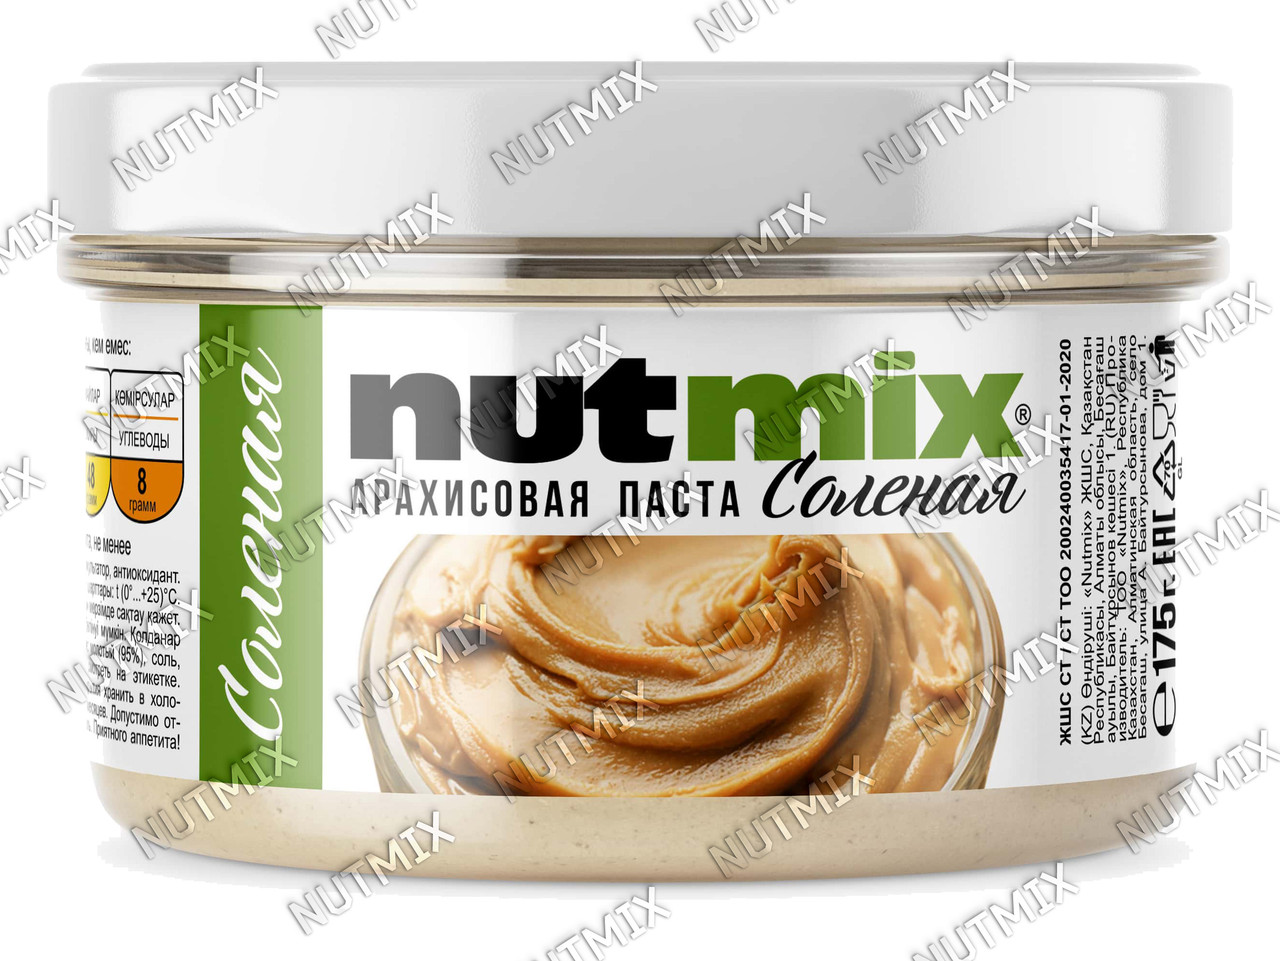 Арахисовая паста NutMix Соленая 175 гр.